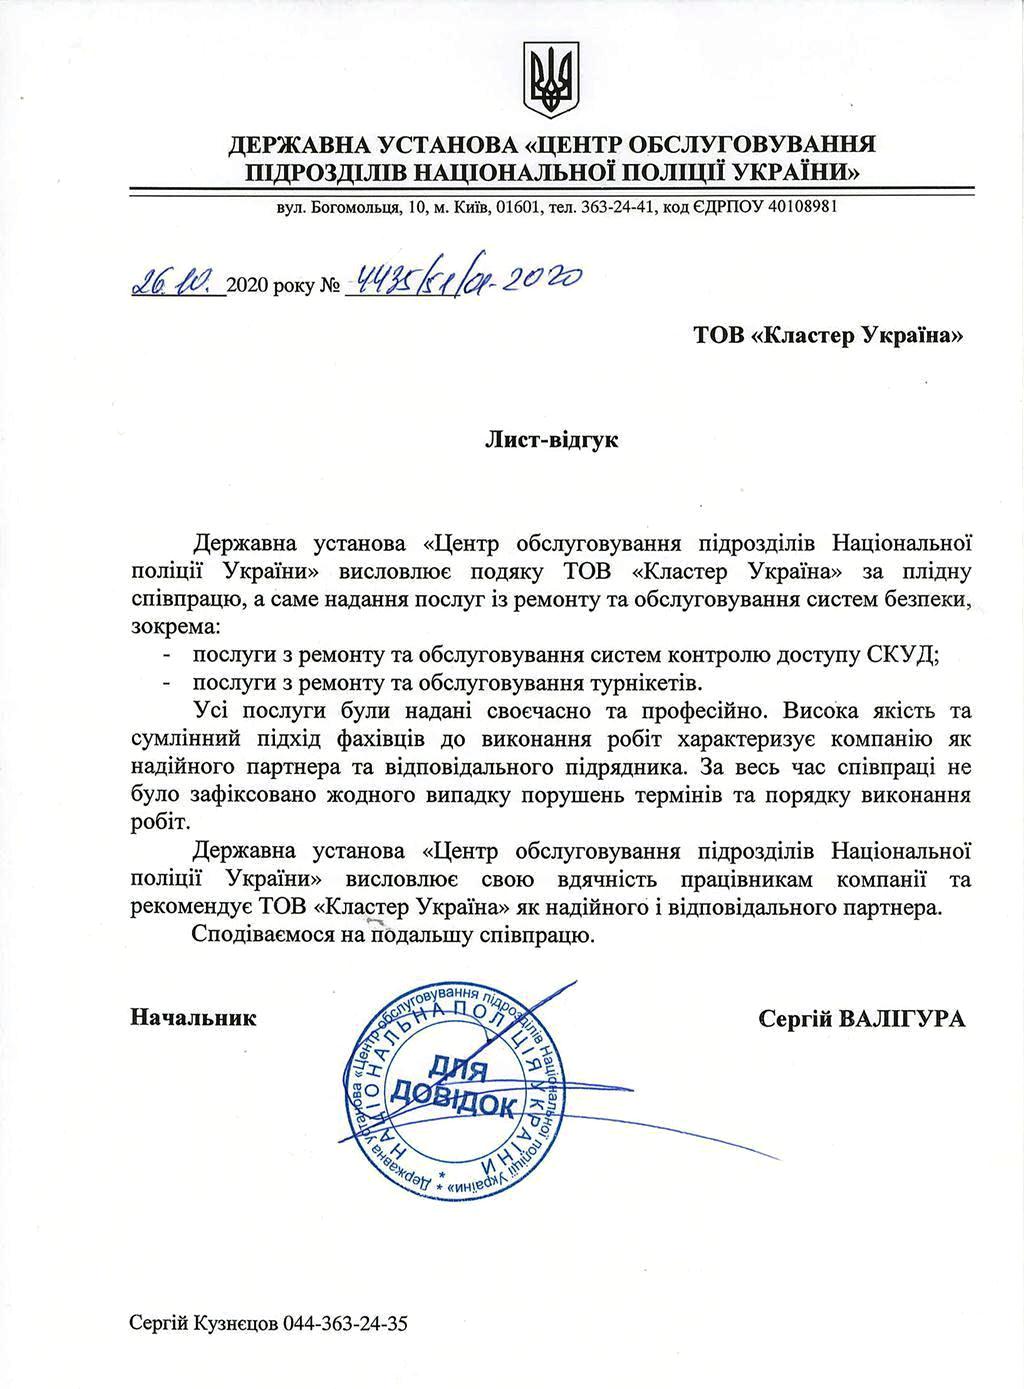 Рекомендательное письмо от Государственного учреждения – Центр обслуживания подразделений Национальной полиции Украины